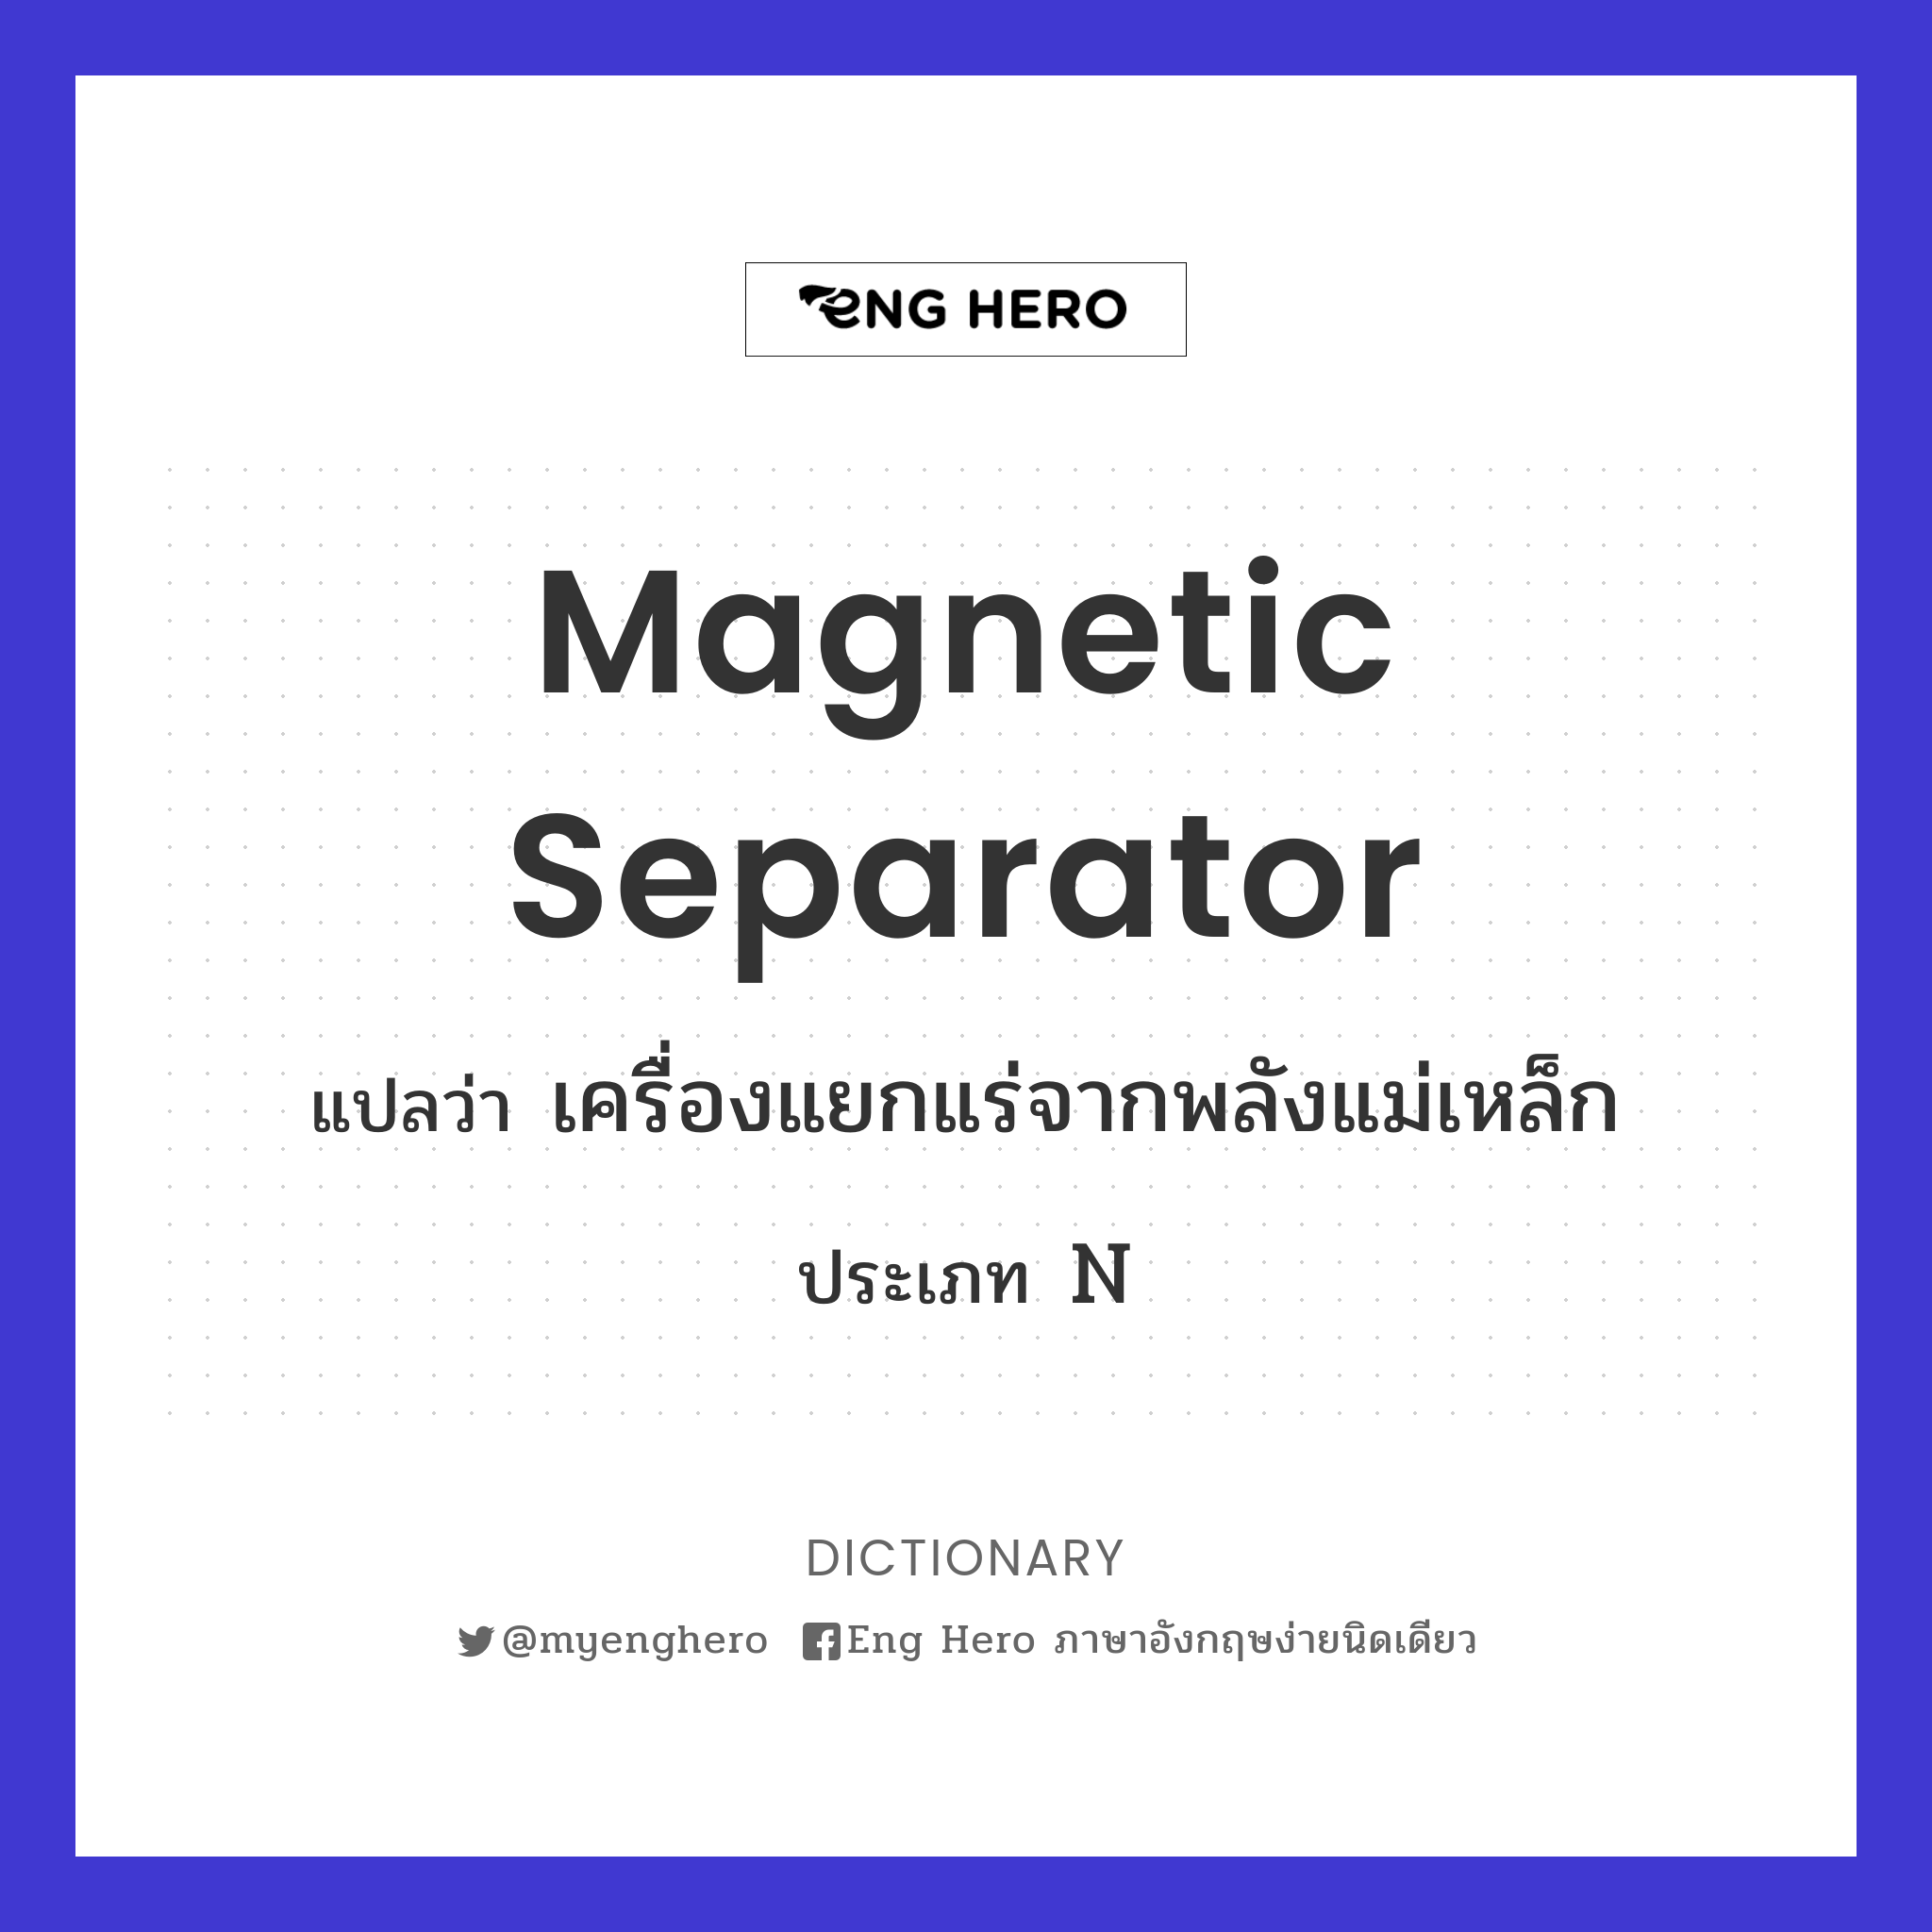 magnetic separator